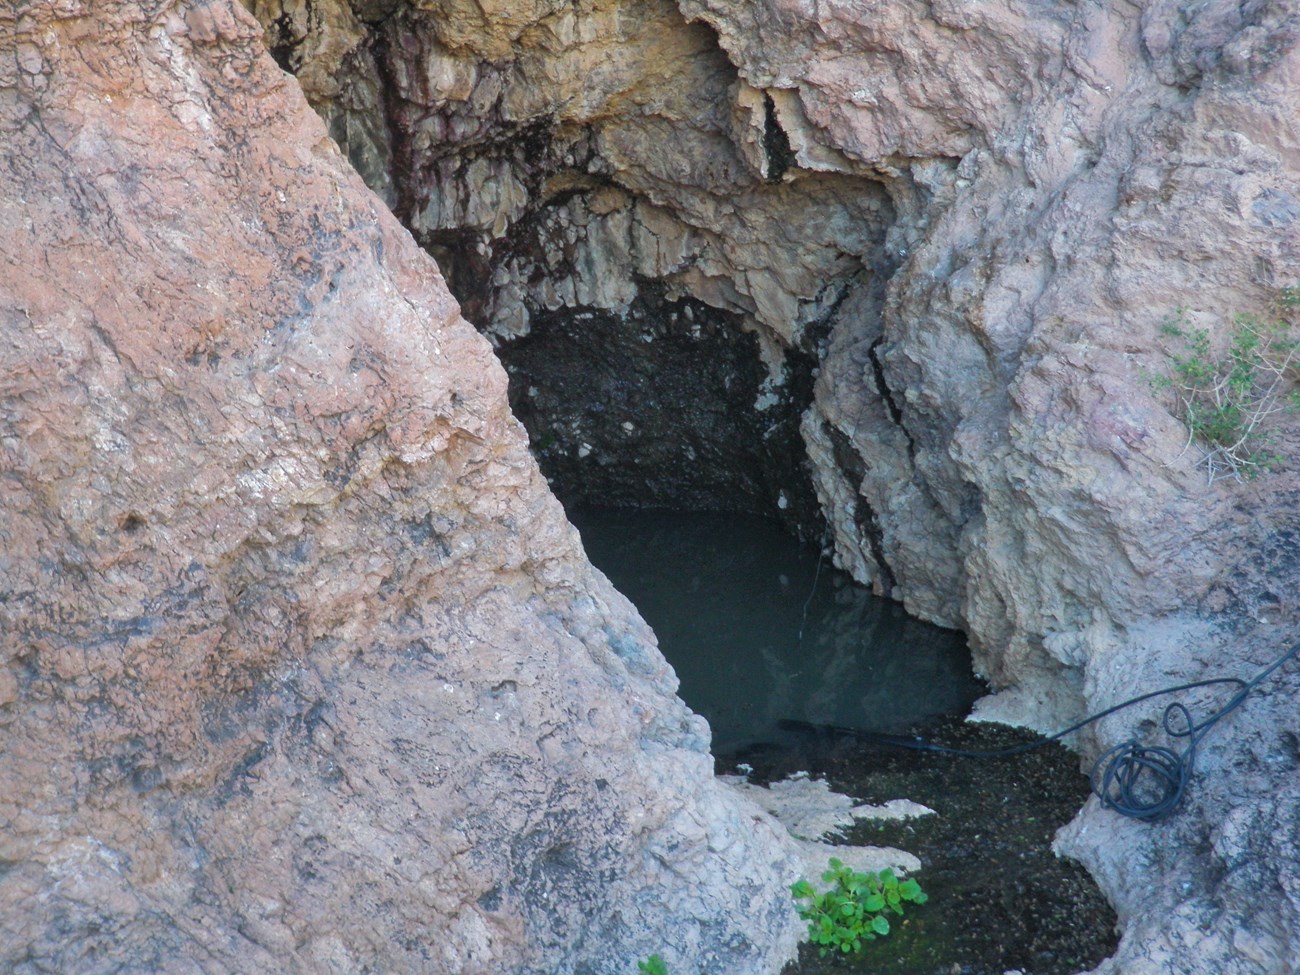 A dark pool of water sits deep in a crevasse between reddish-white rock.